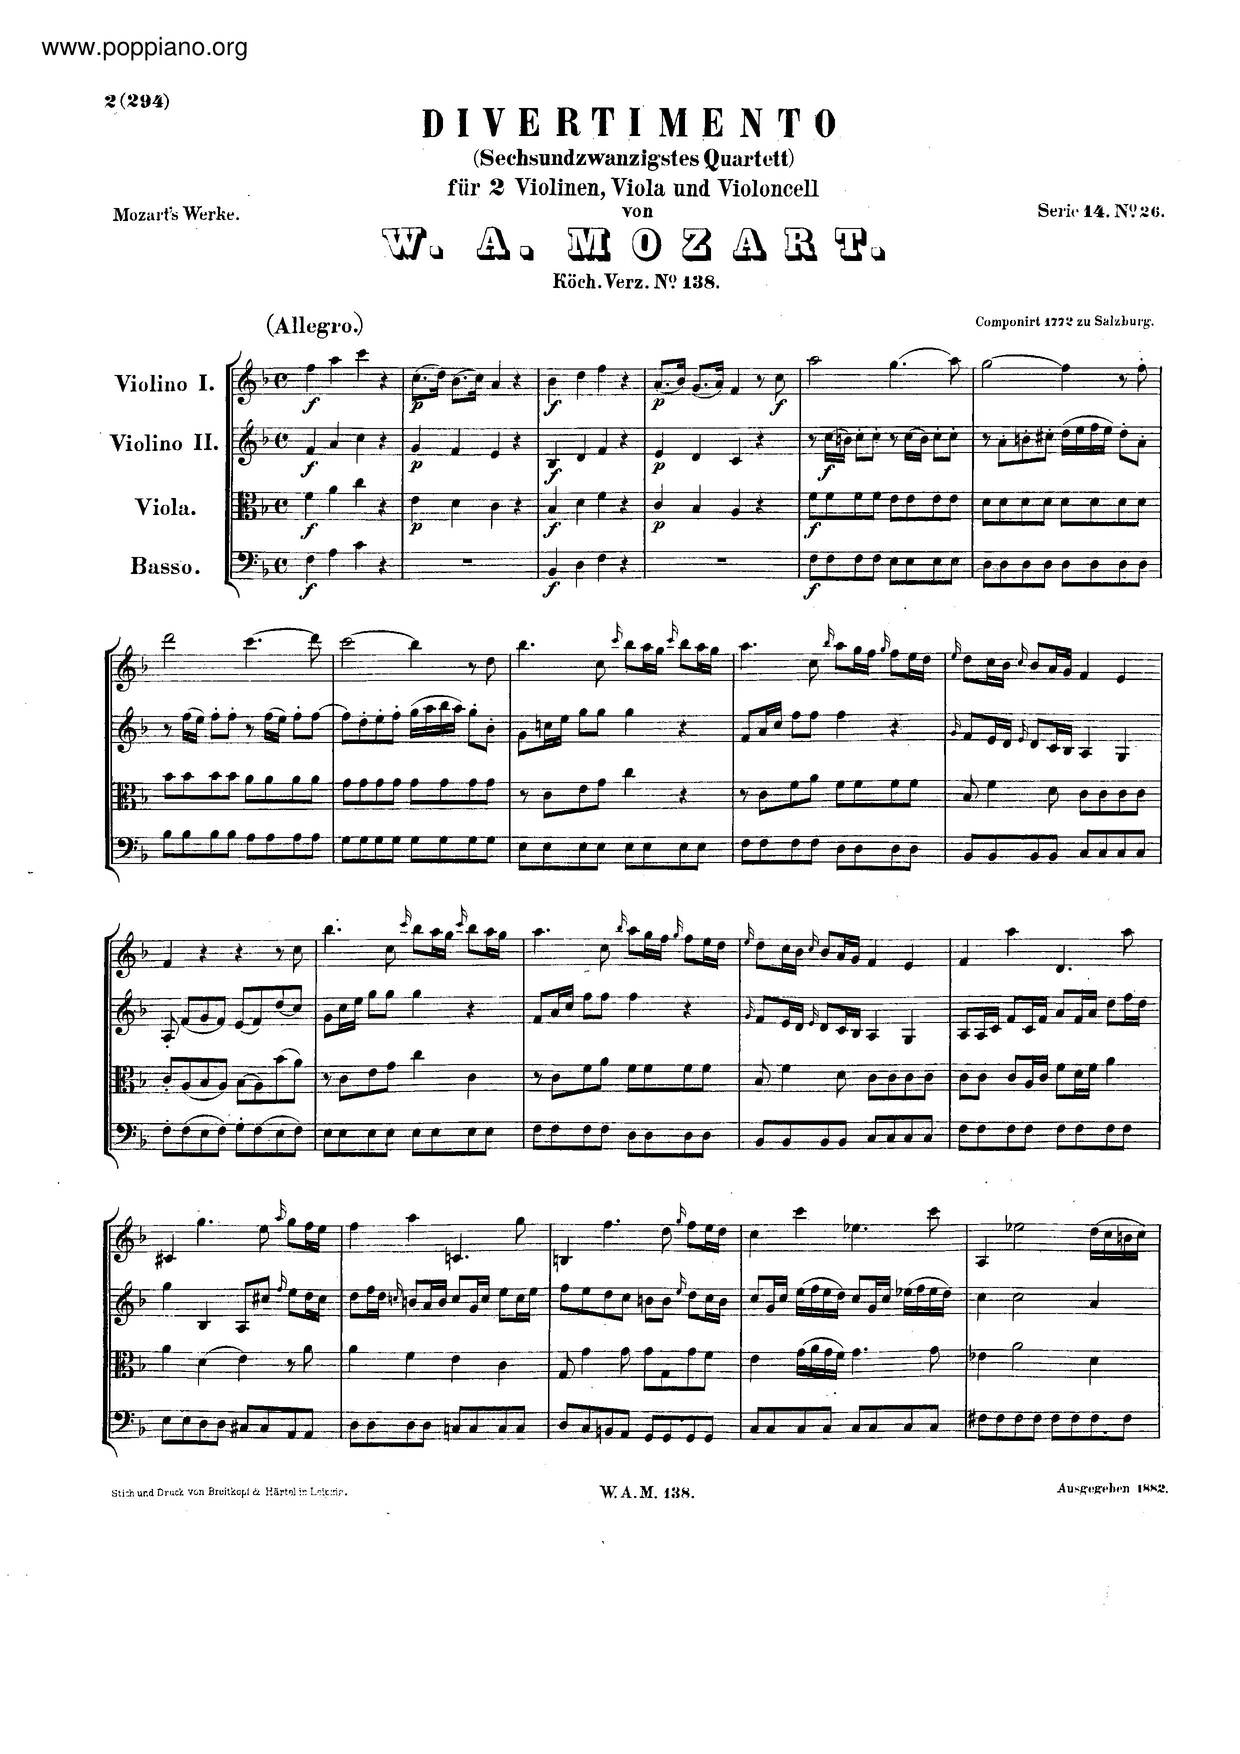 Divertimento In F Major, K. 138/125Cピアノ譜